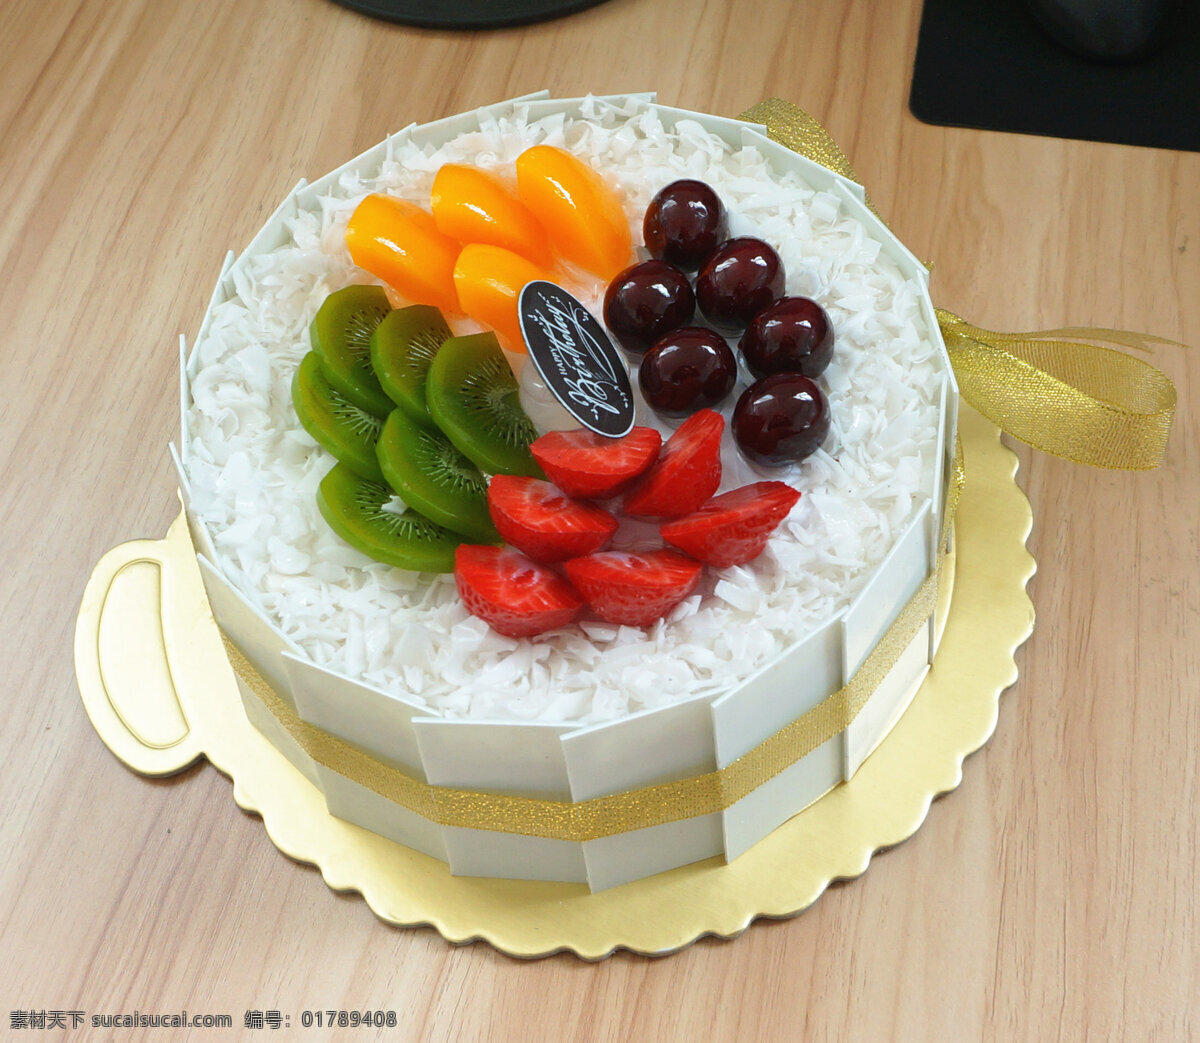 生日蛋糕 蛋糕 生 日 节日蛋糕 水果蛋糕 摄影专辑 餐饮美食 西餐美食